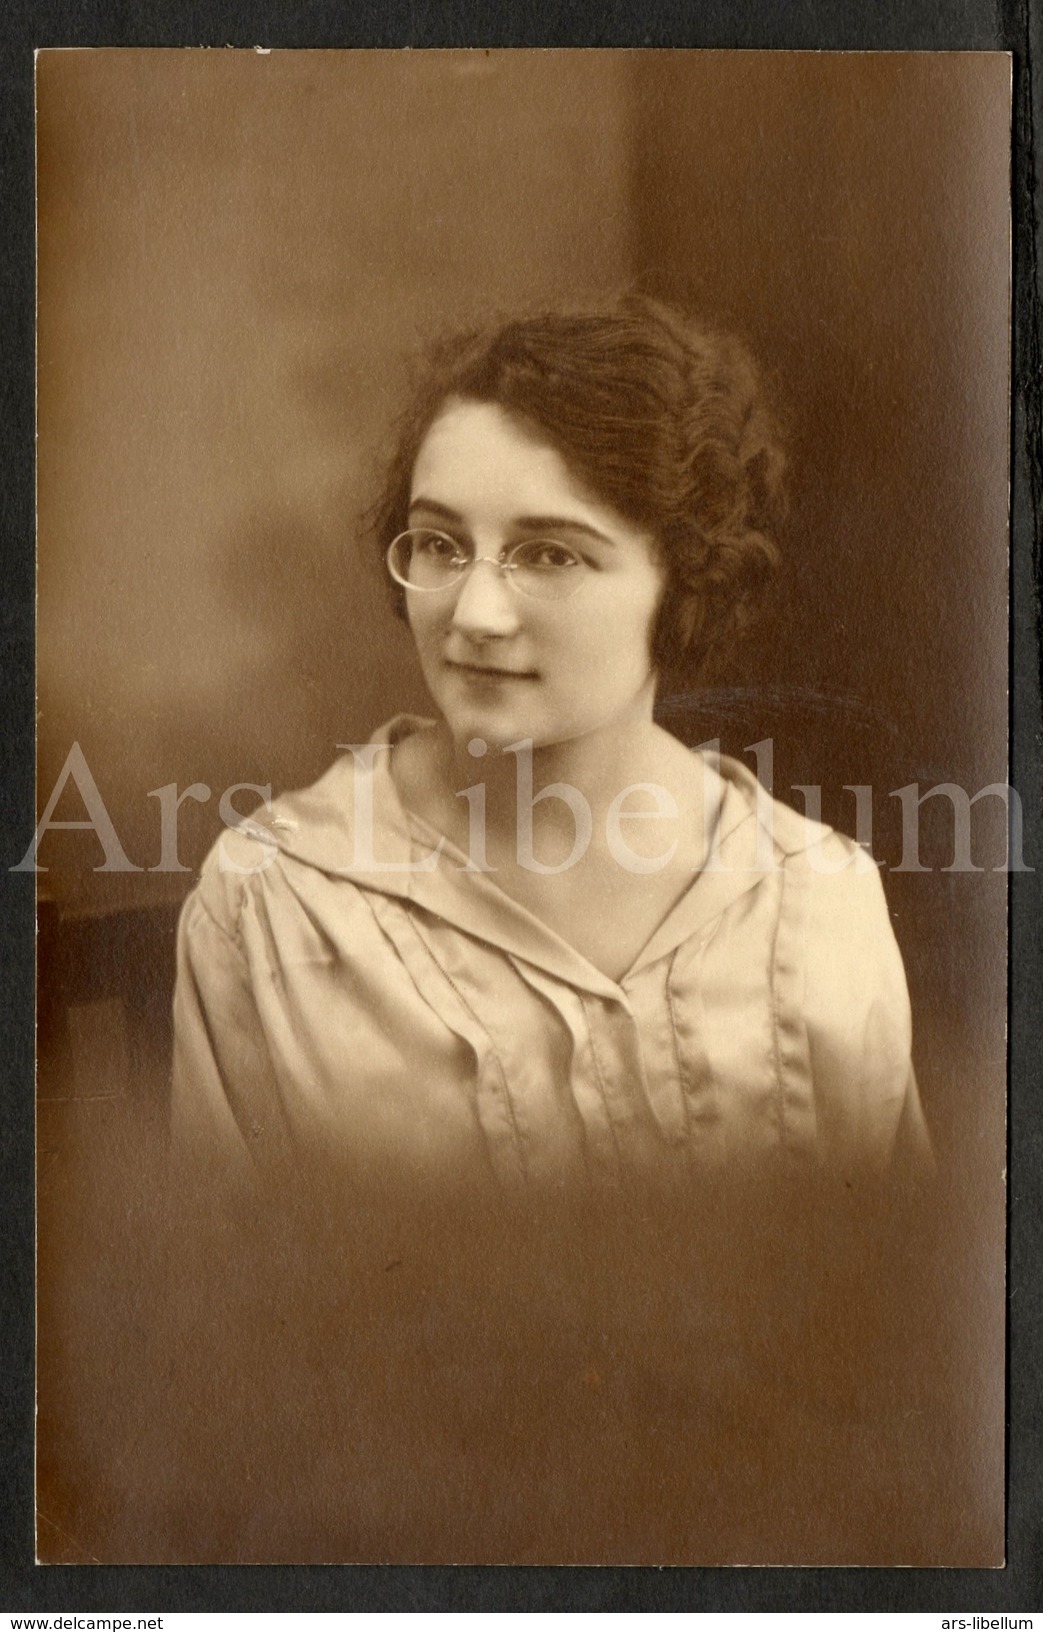 Photo Ancien / Femme / Woman / Pince-nez / Paulette Warscotte (?) / Photo Serge A. Trebsé / Saintes / France / 1924 - Personas Identificadas